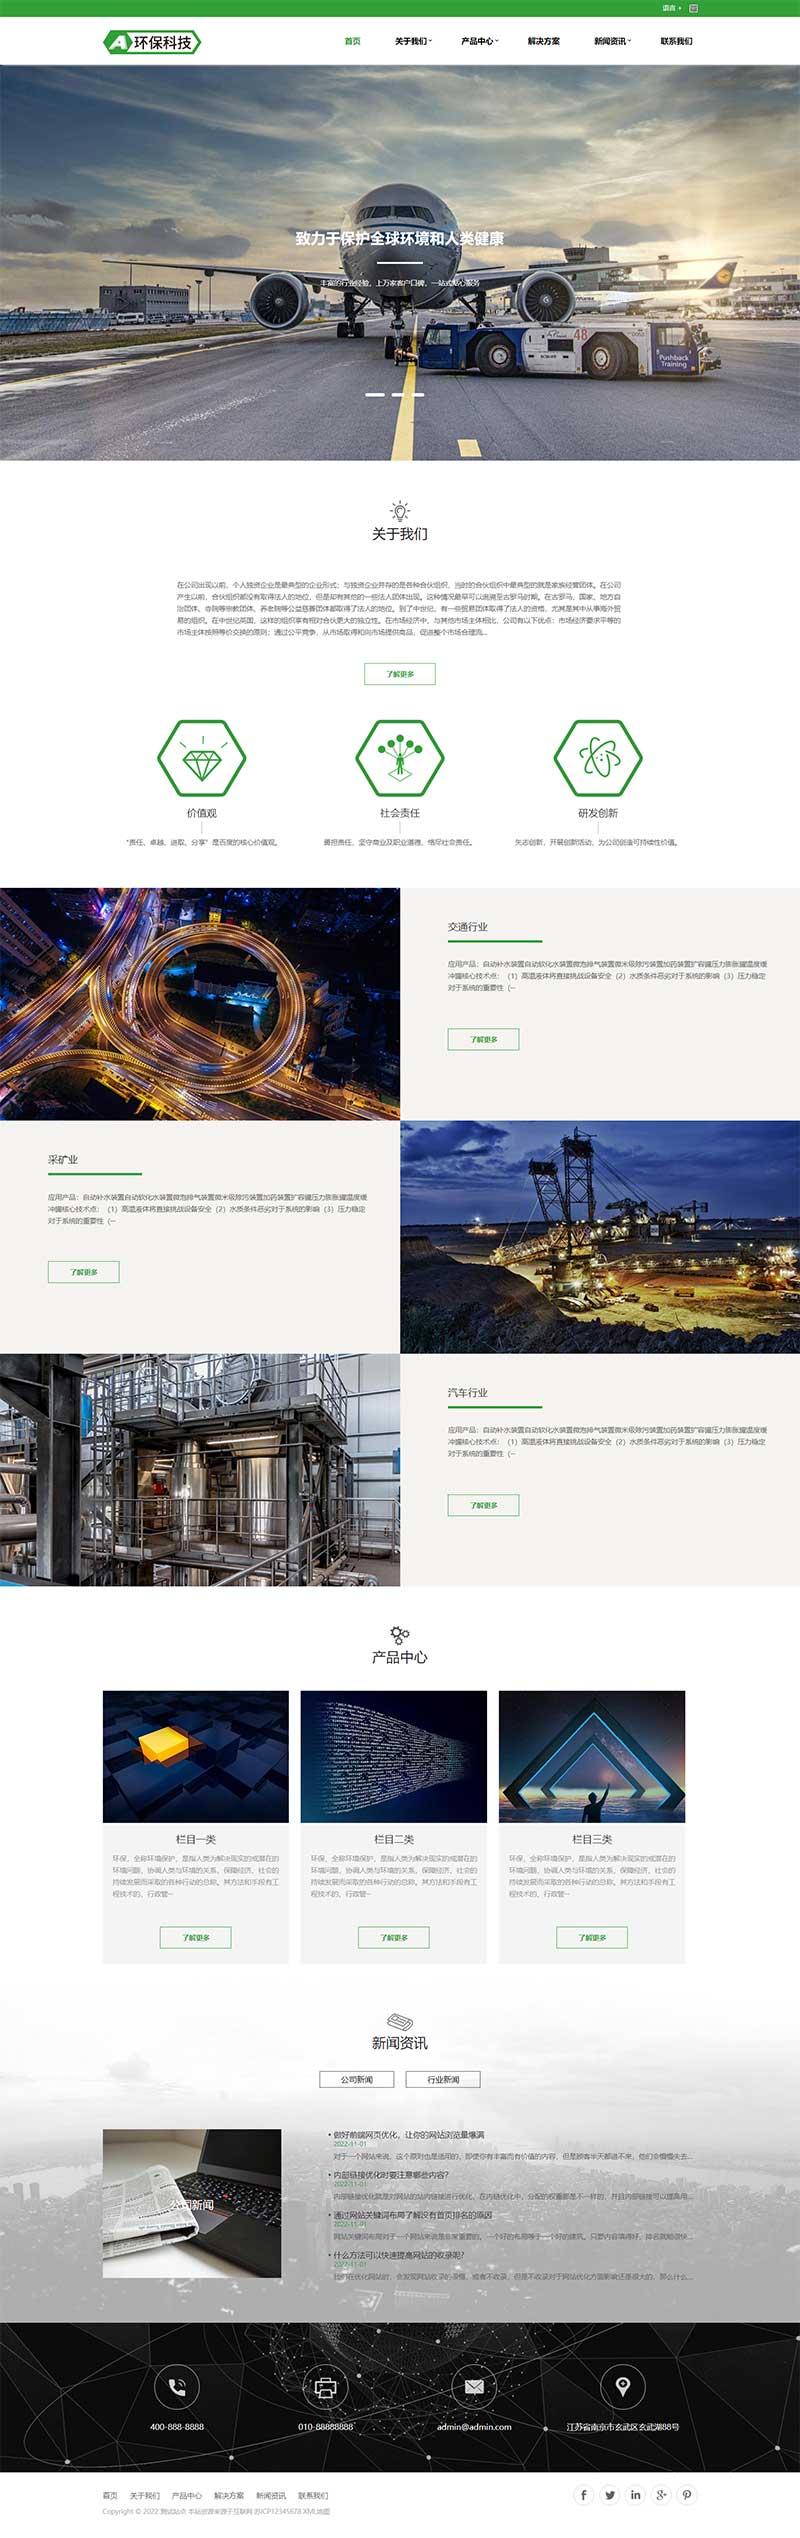 (自适应移动端)html5响应式绿色环保设备企业网站电脑端模板展示图片